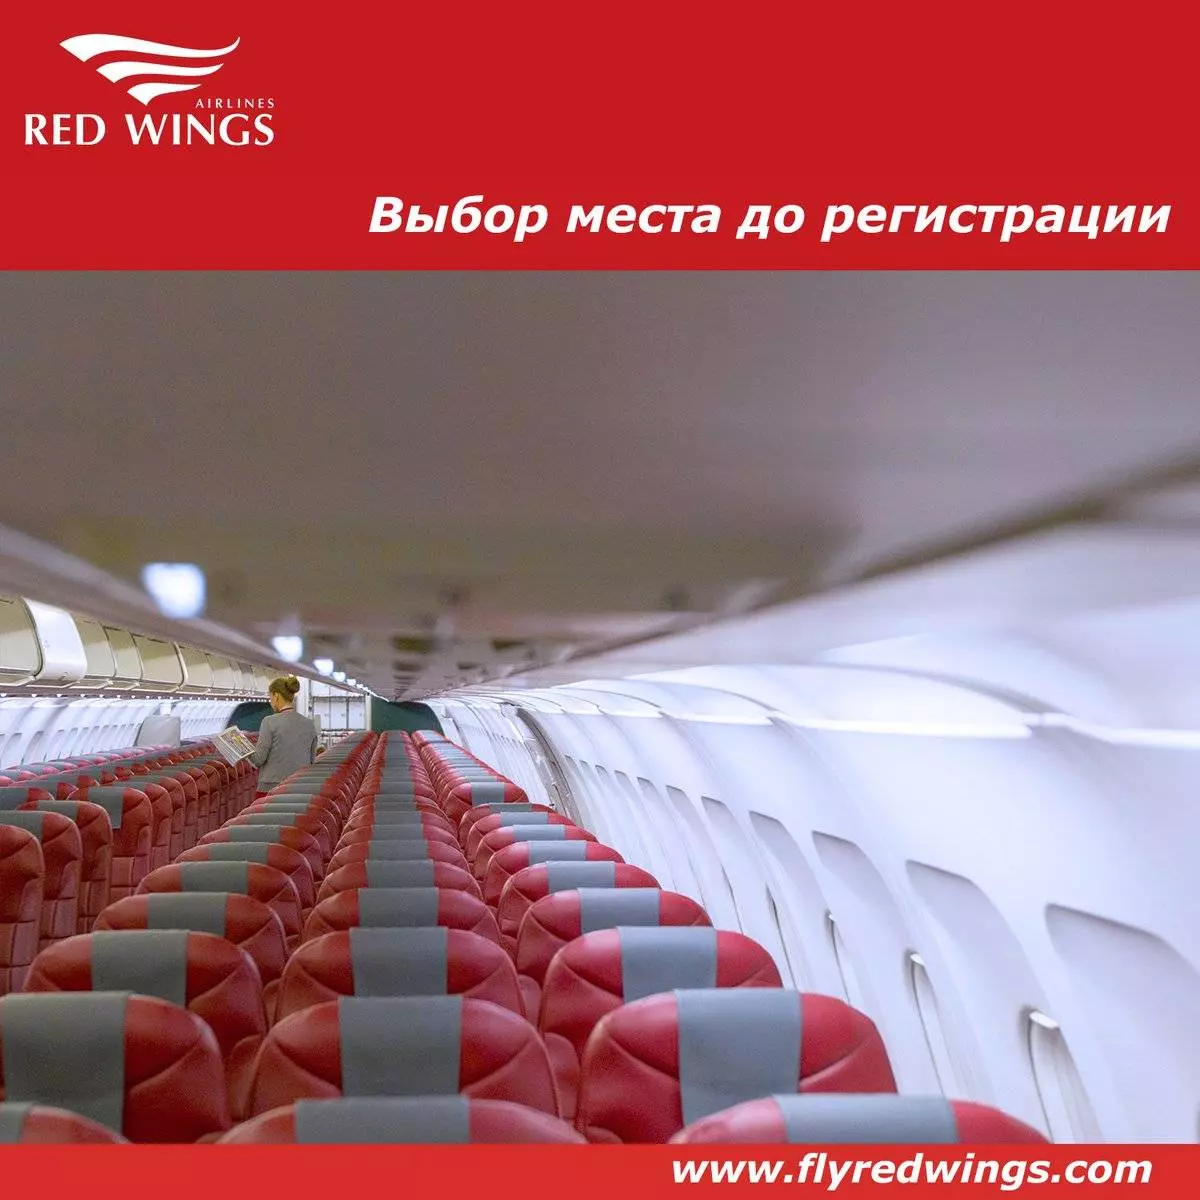 Ред вингс авиакомпания - официальный сайт red wings airlines, контакты, авиабилеты и расписание рейсов  2022